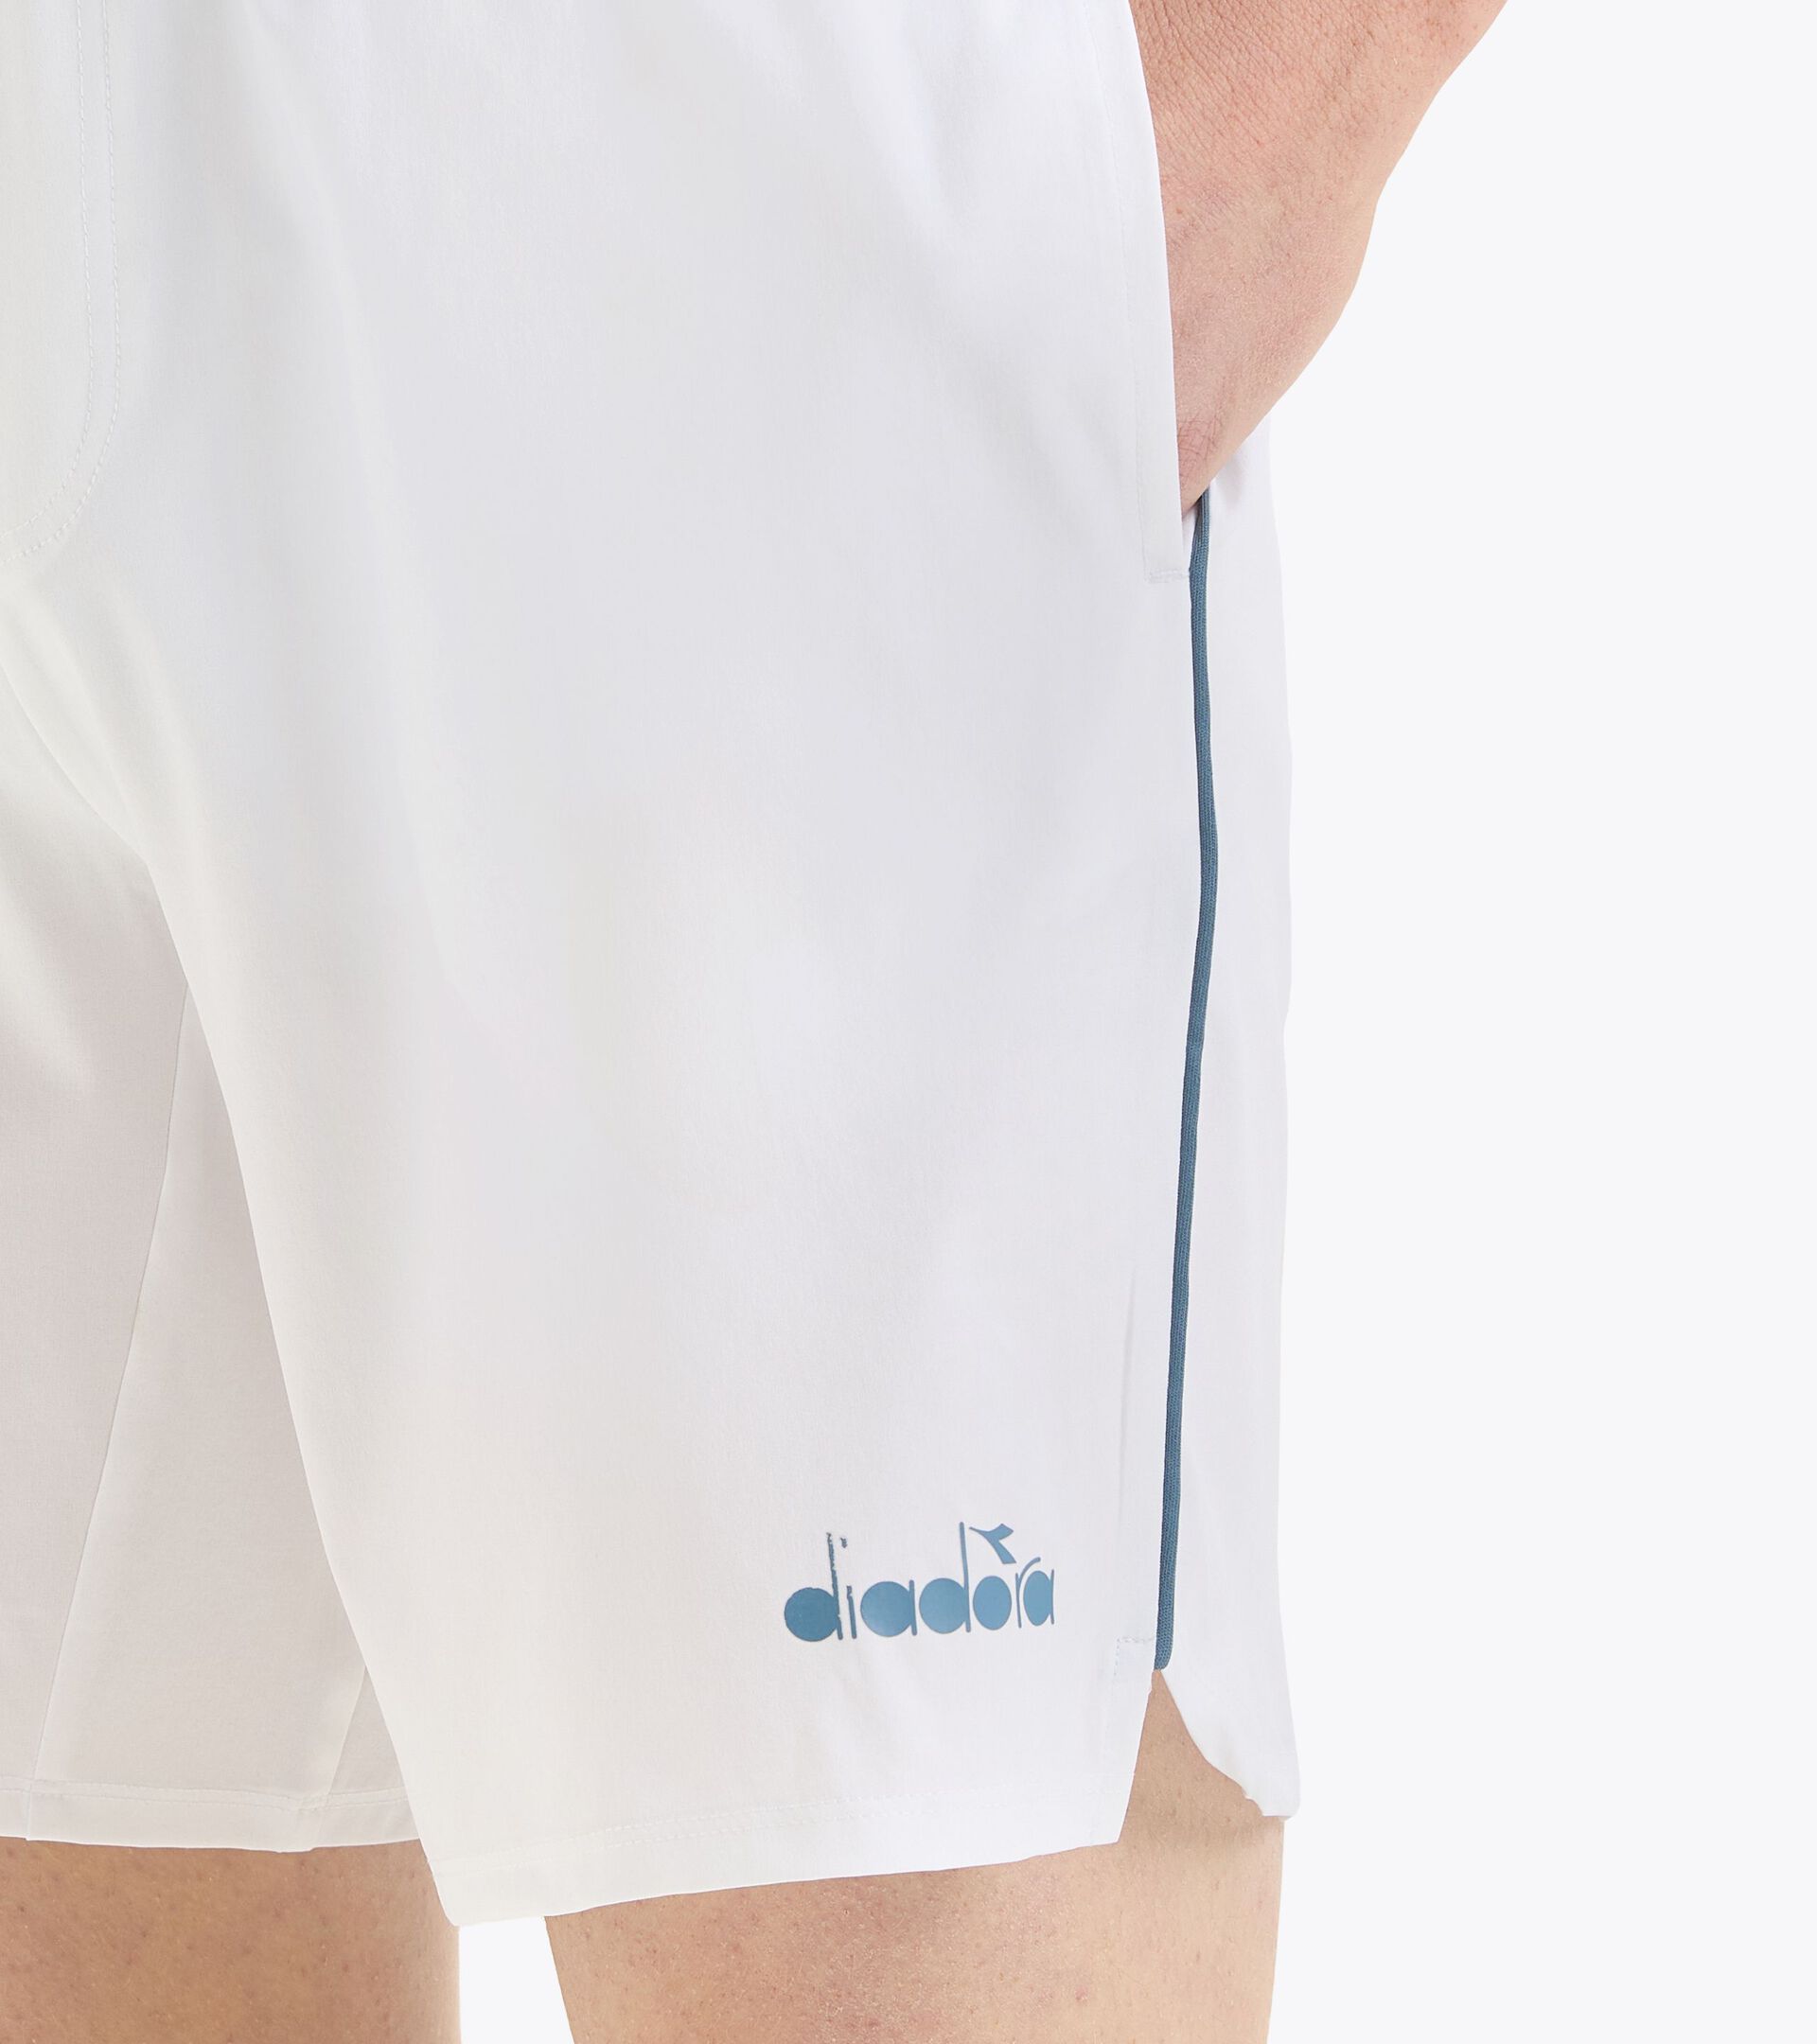 Tennis-Shorts 9’’ - Herren
 SHORTS CORE 9" STRAHLEND WEISSE - Diadora